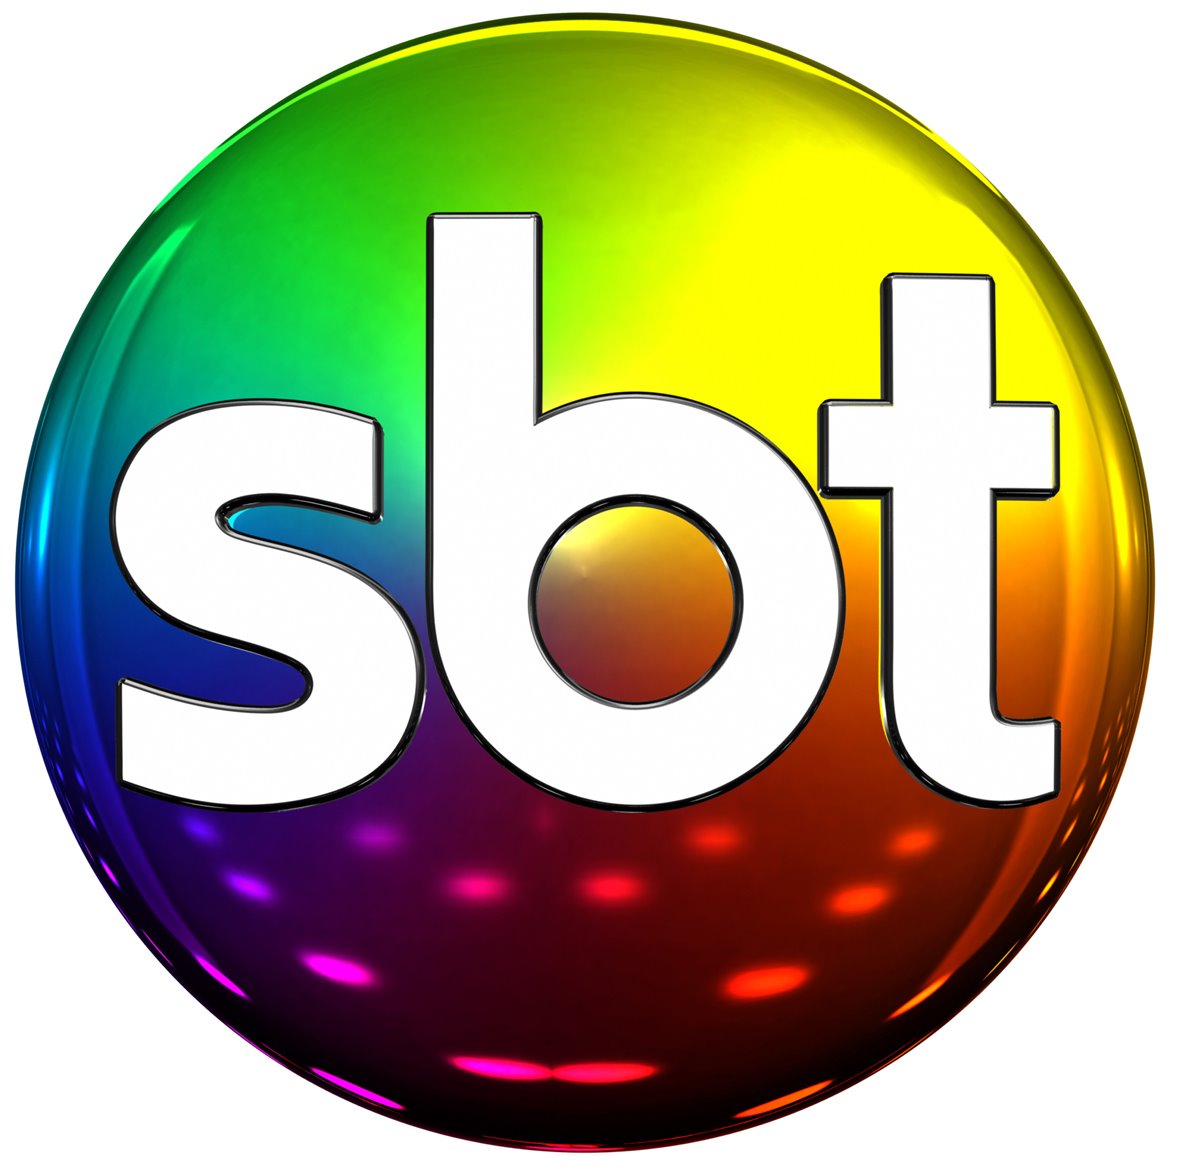 SBT à venda! Silvio Santos procura compradores com valor astronômico após 40 anos de história